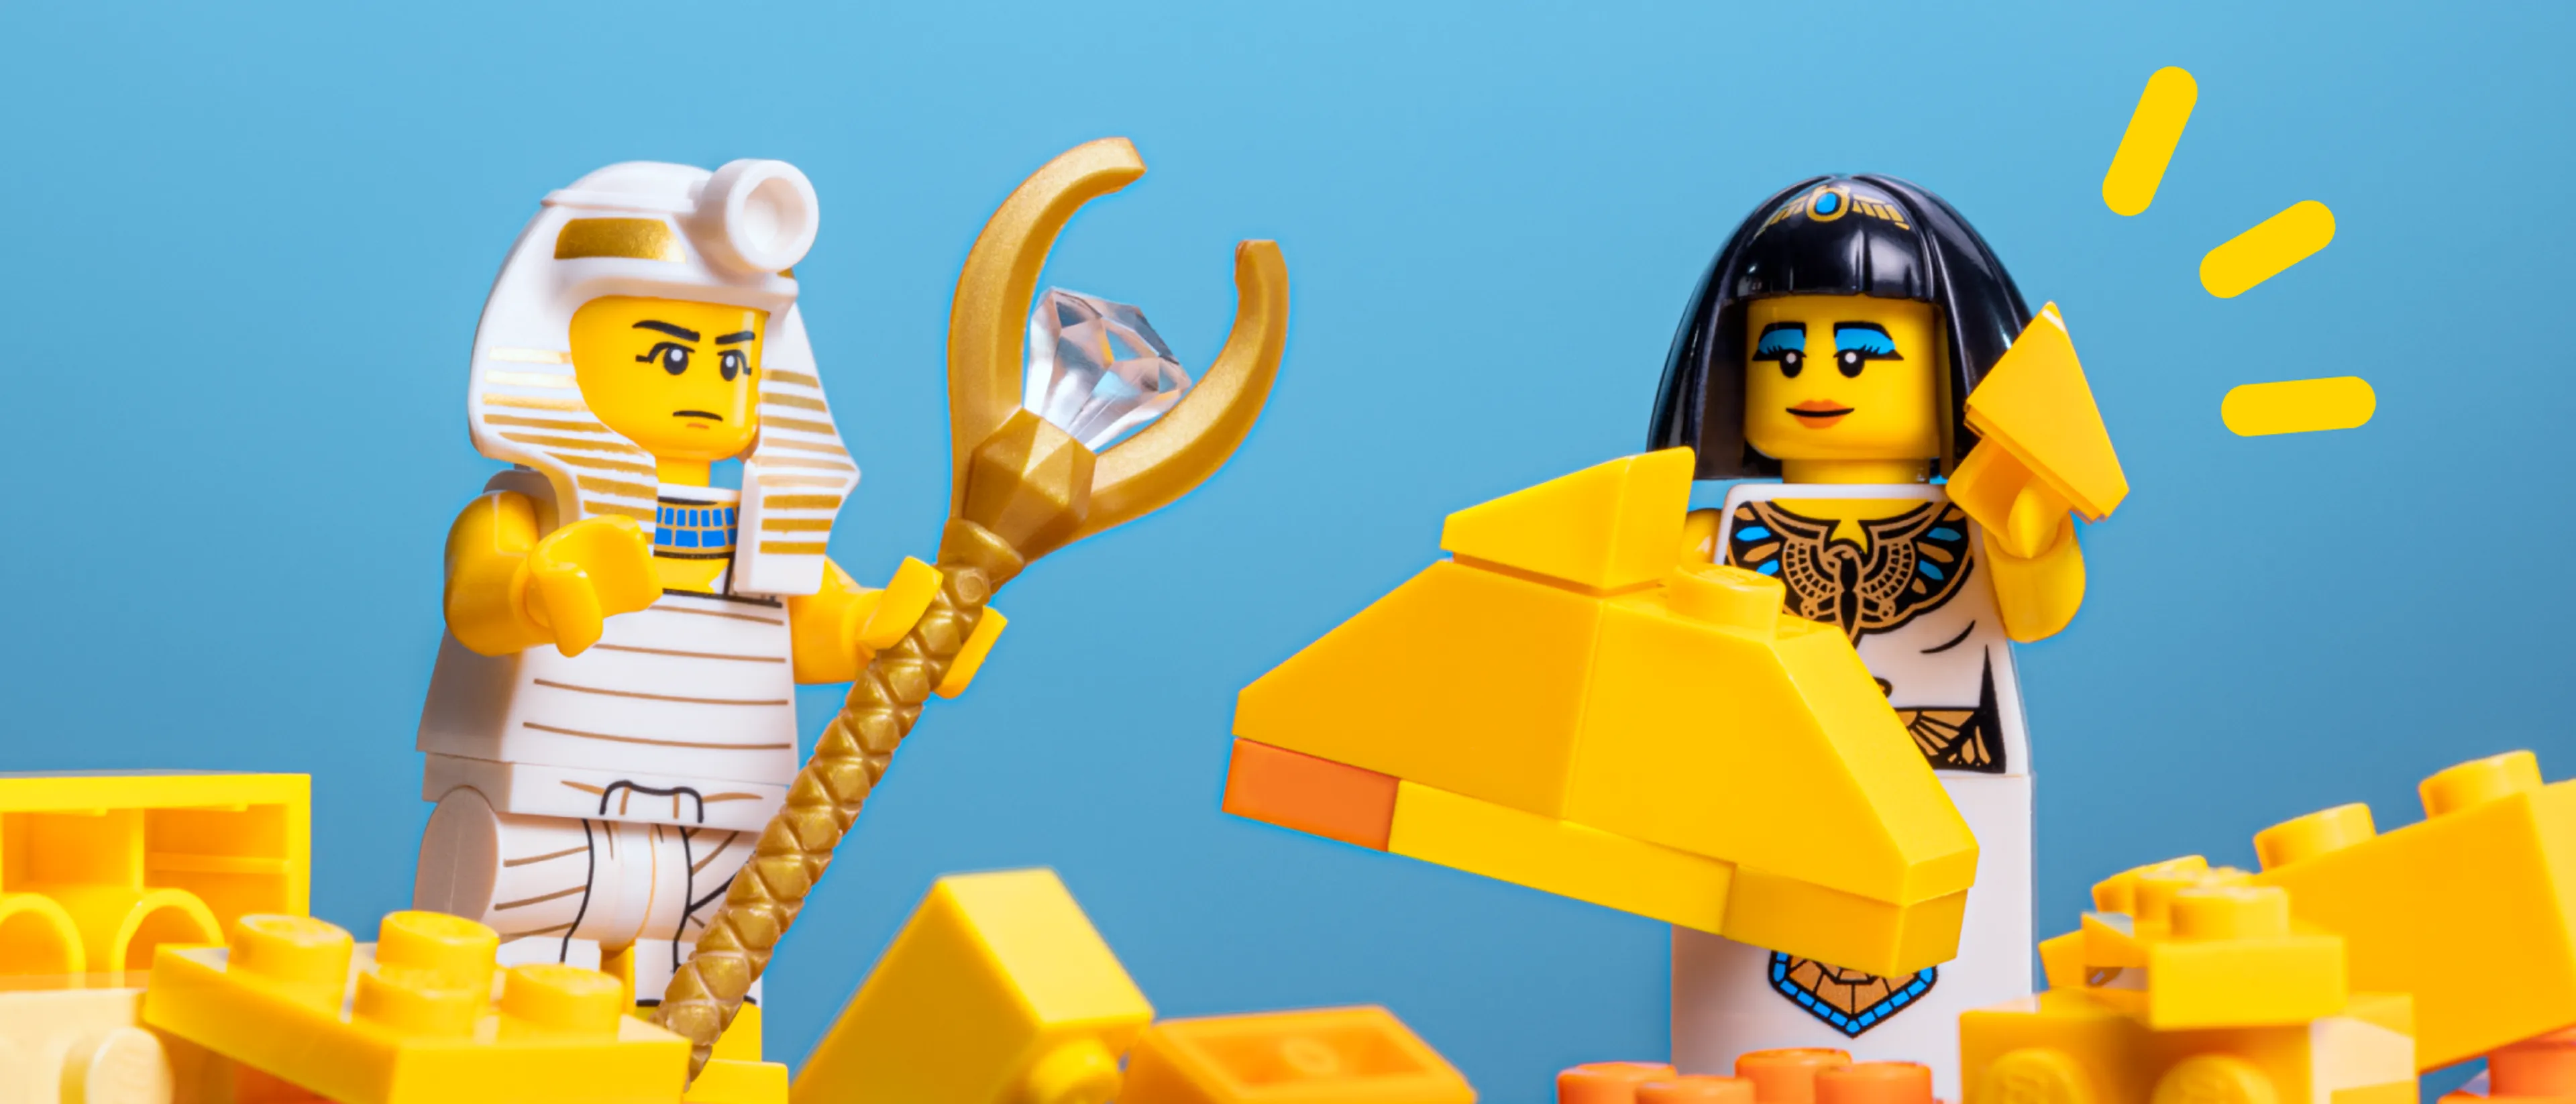 Lego abrick - Lego